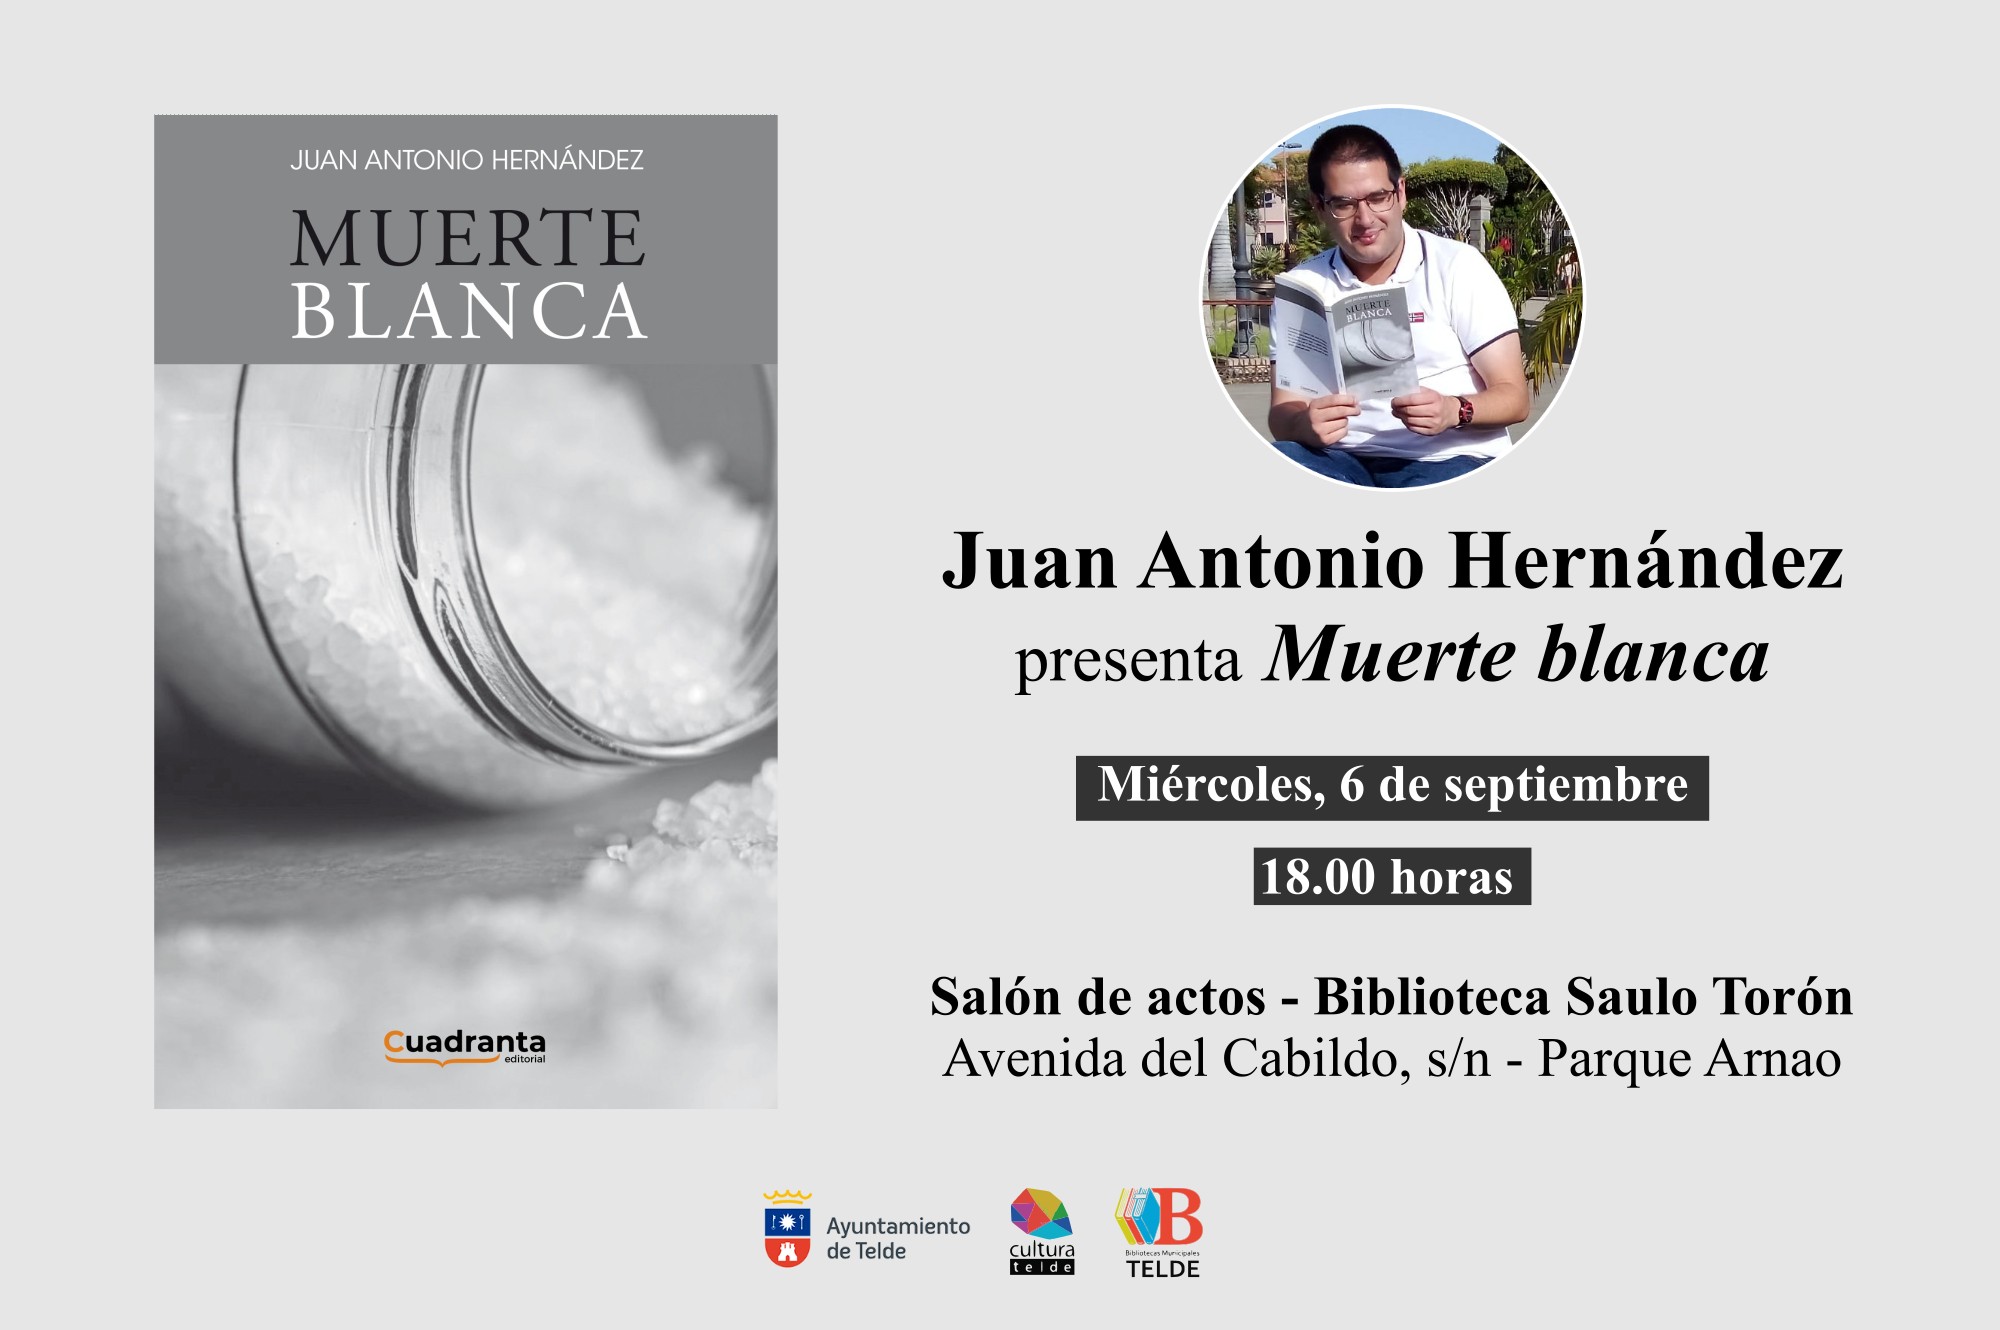 Juan Antonio Hernández presenta "Muerte blanca" / CanariasNoticias.es 